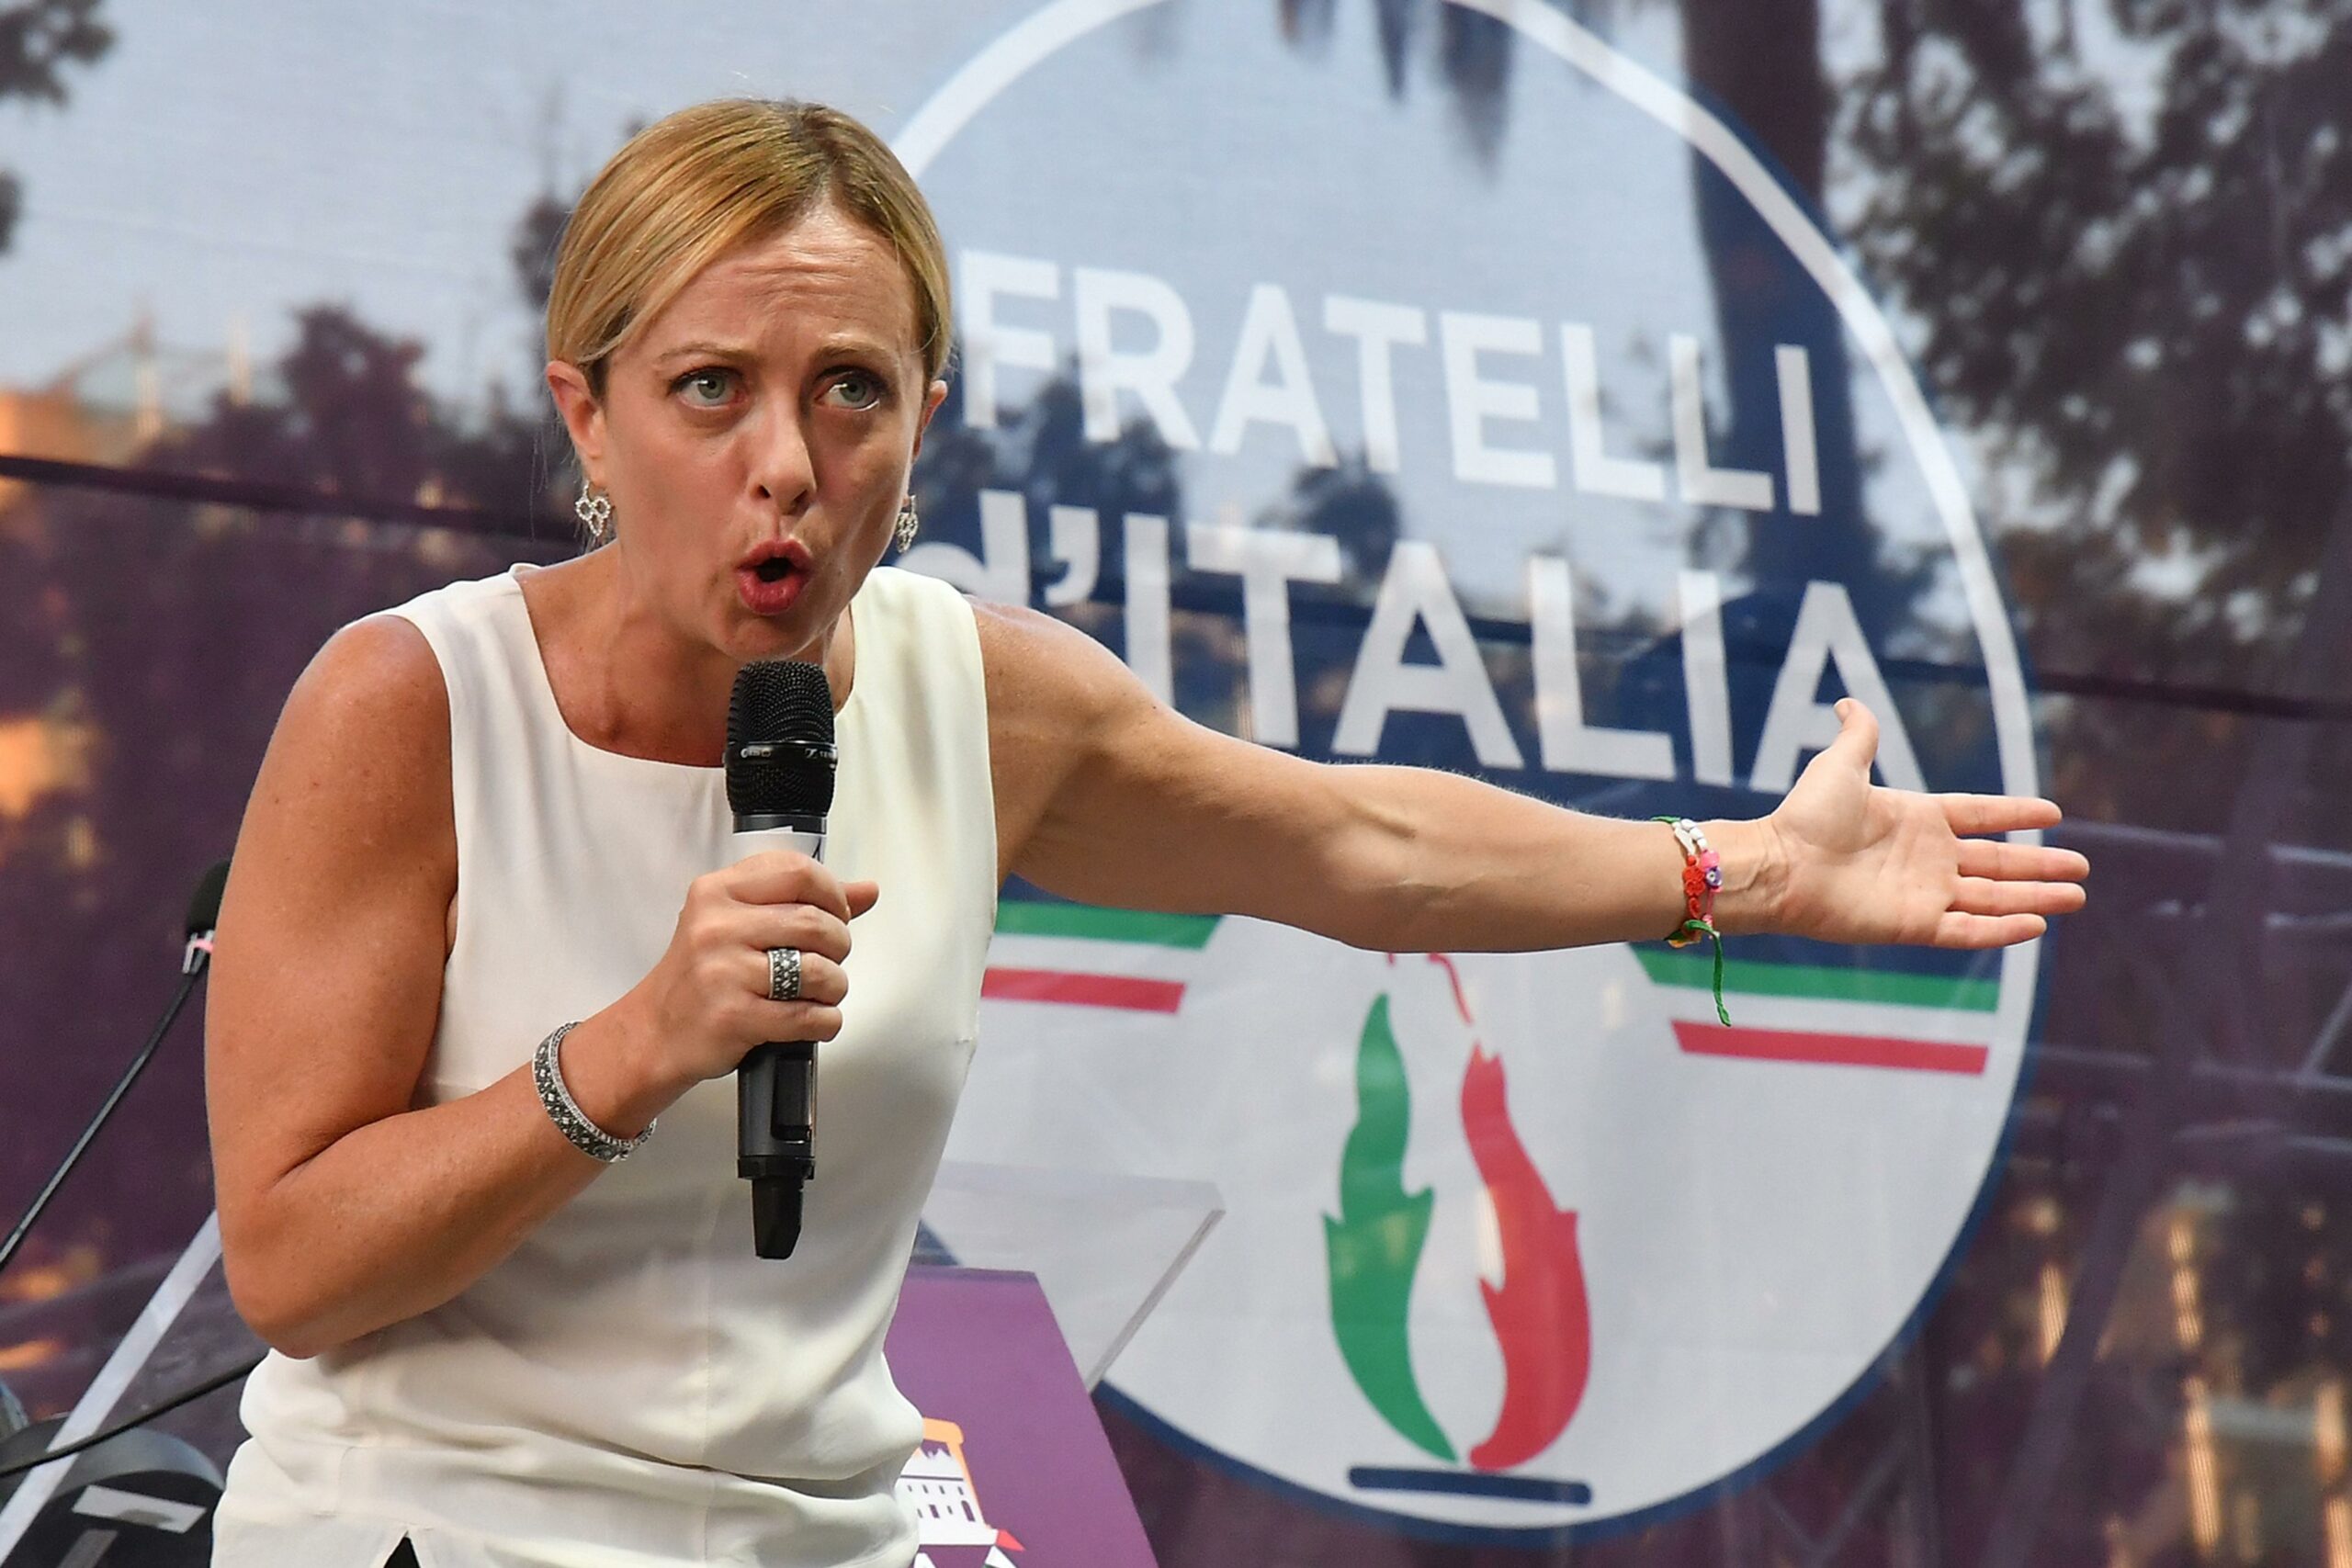 Ιταλία - Πηγή κυβέρνησης Μελόνι: Προσπαθούν να μας ρίξουν επειδή θα είμαστε ρατσιστές, φασίστες και  ομοφοβικοί.